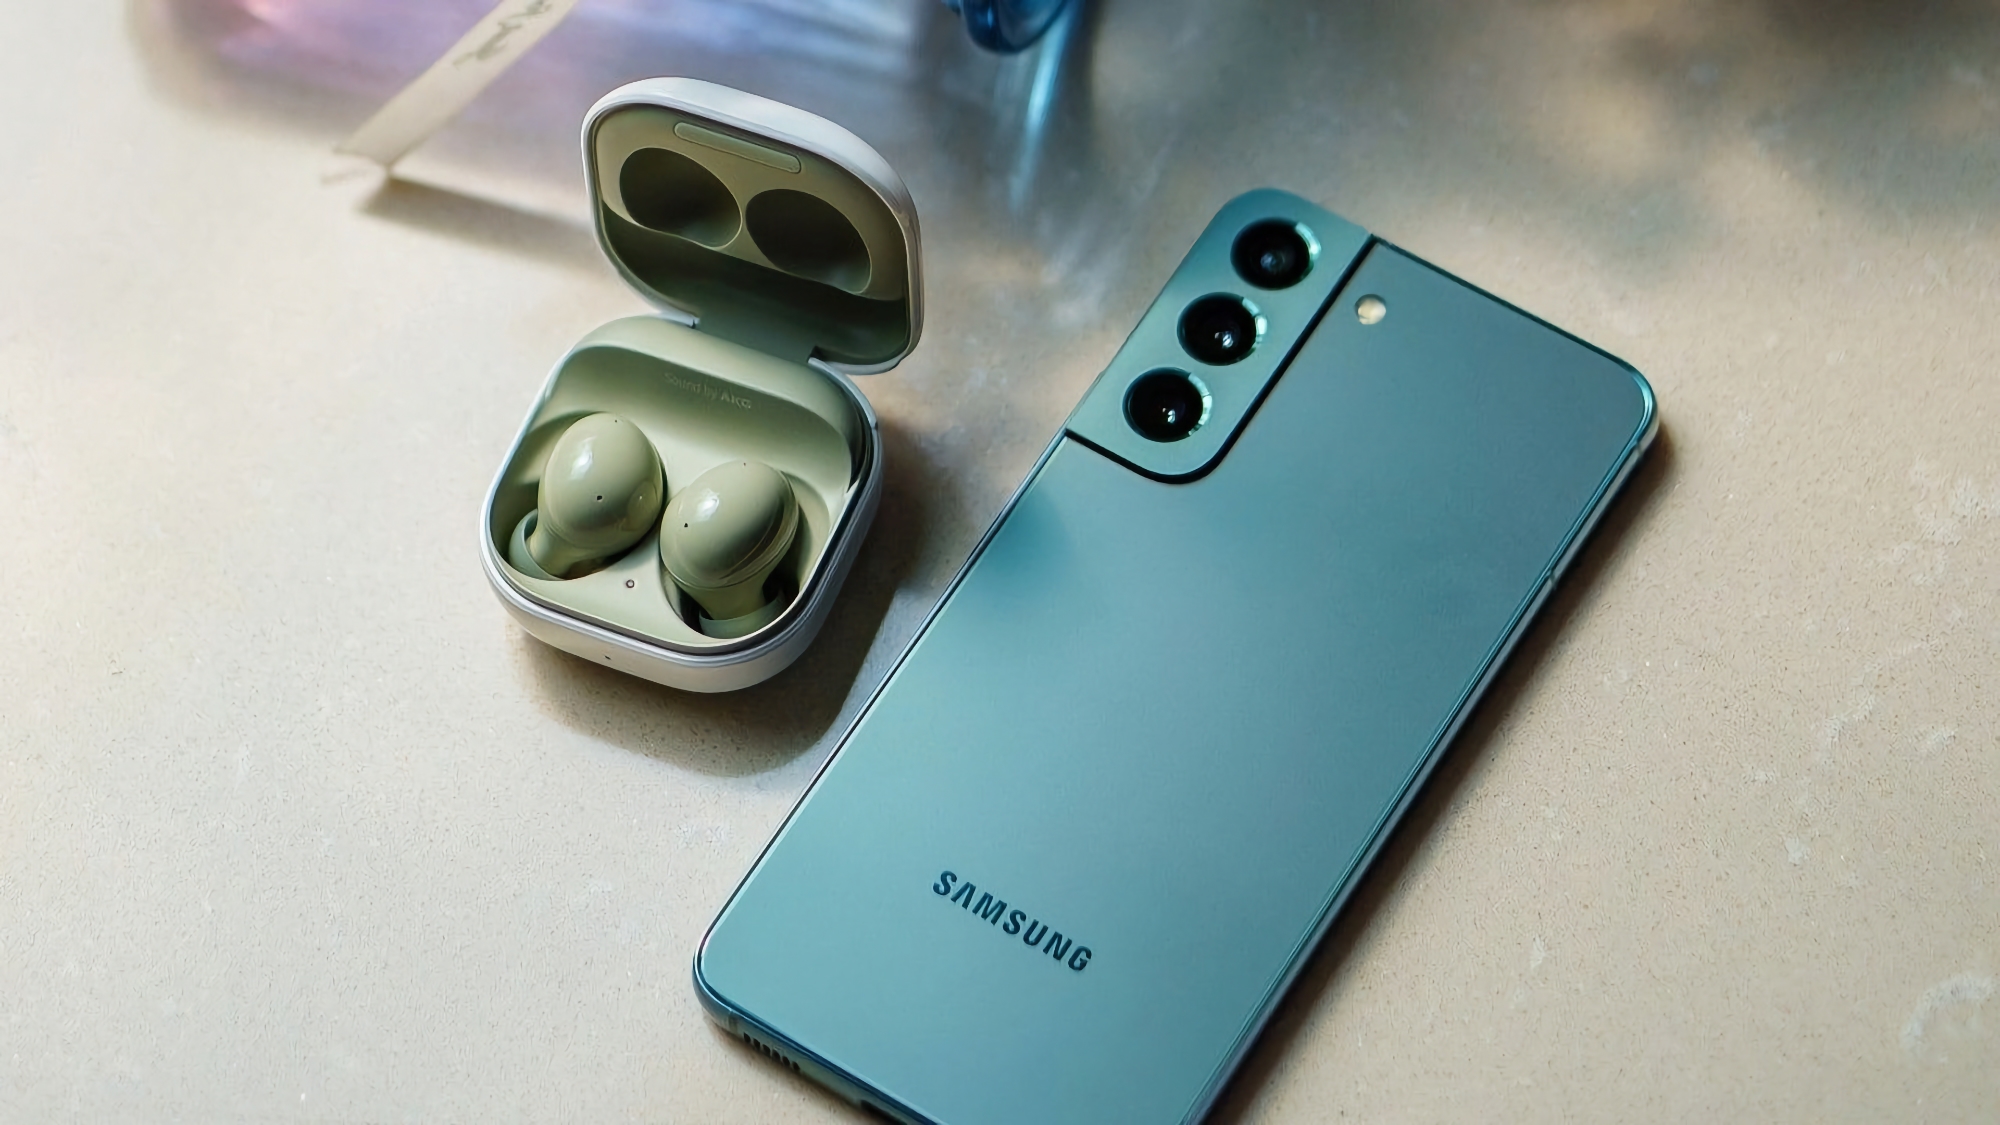 Gerücht: Samsung Galaxy S23 FE bekommt Exynos 2200-Prozessor, 45W-Akku und wird im 4. Quartal dieses Jahres erscheinen